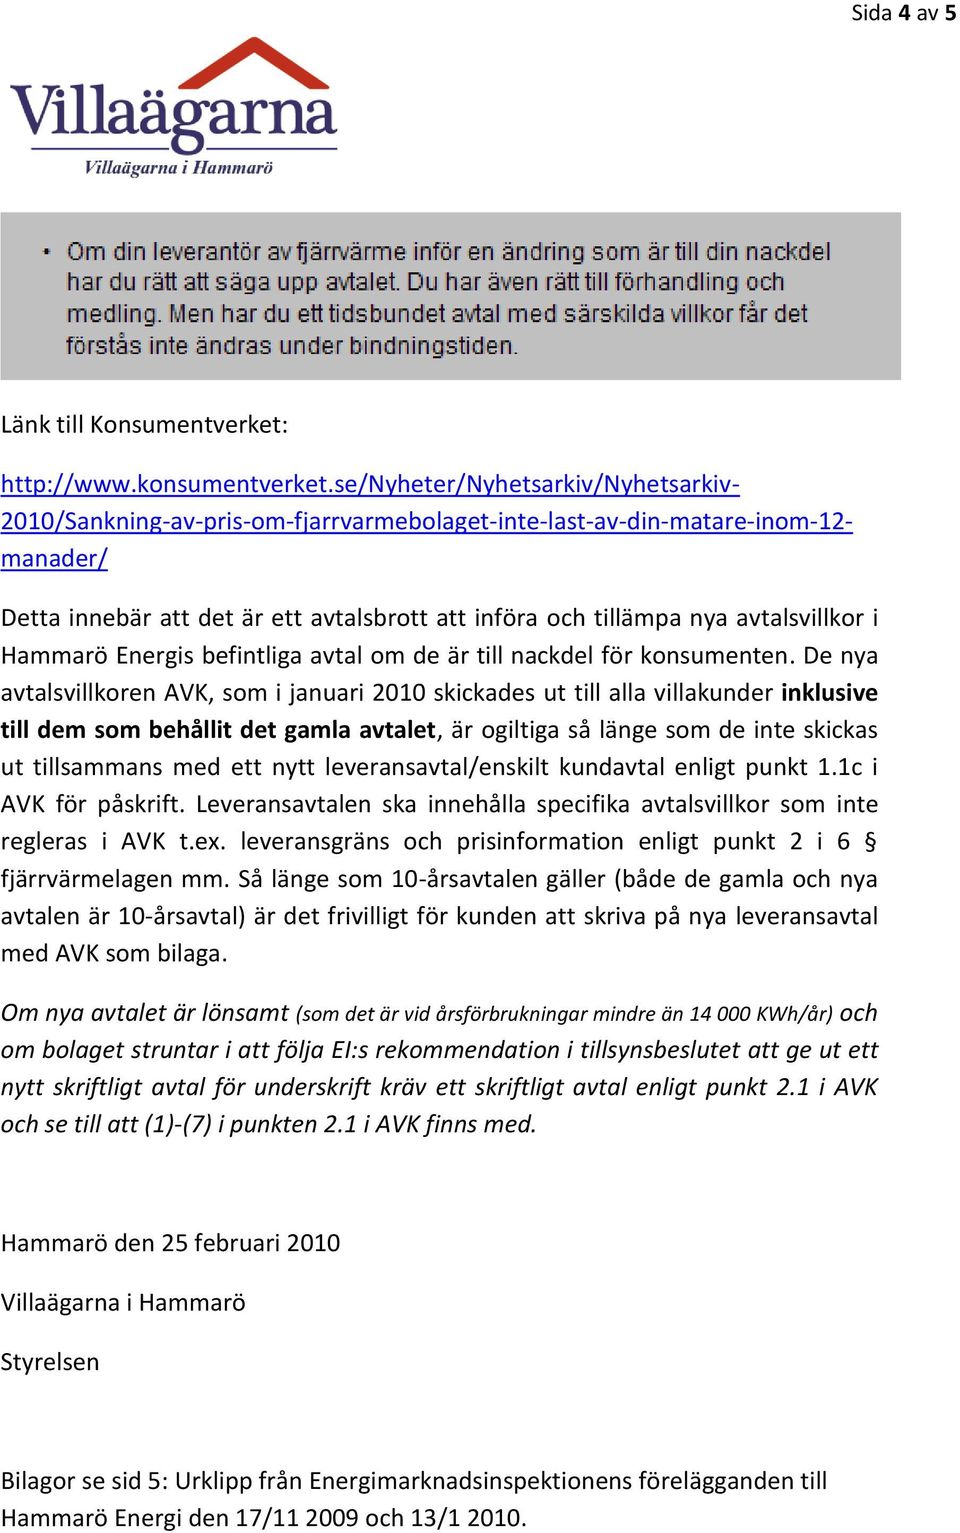 avtalsvillkor i Hammarö Energis befintliga avtal om de är till nackdel för konsumenten.